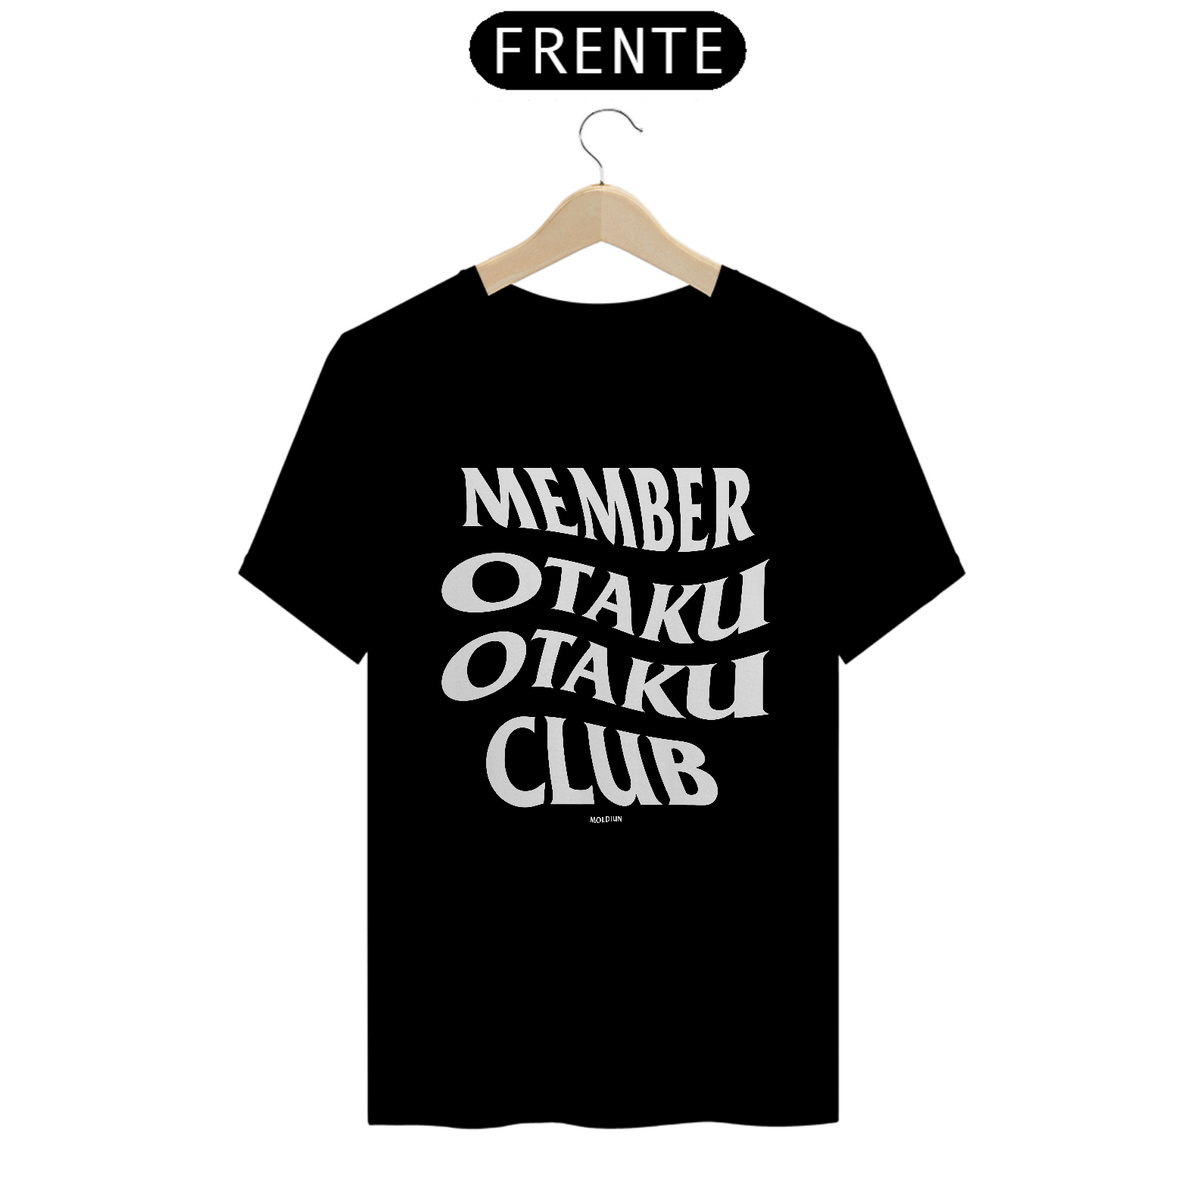 Nome do produto: Member Otaku Club (frente)